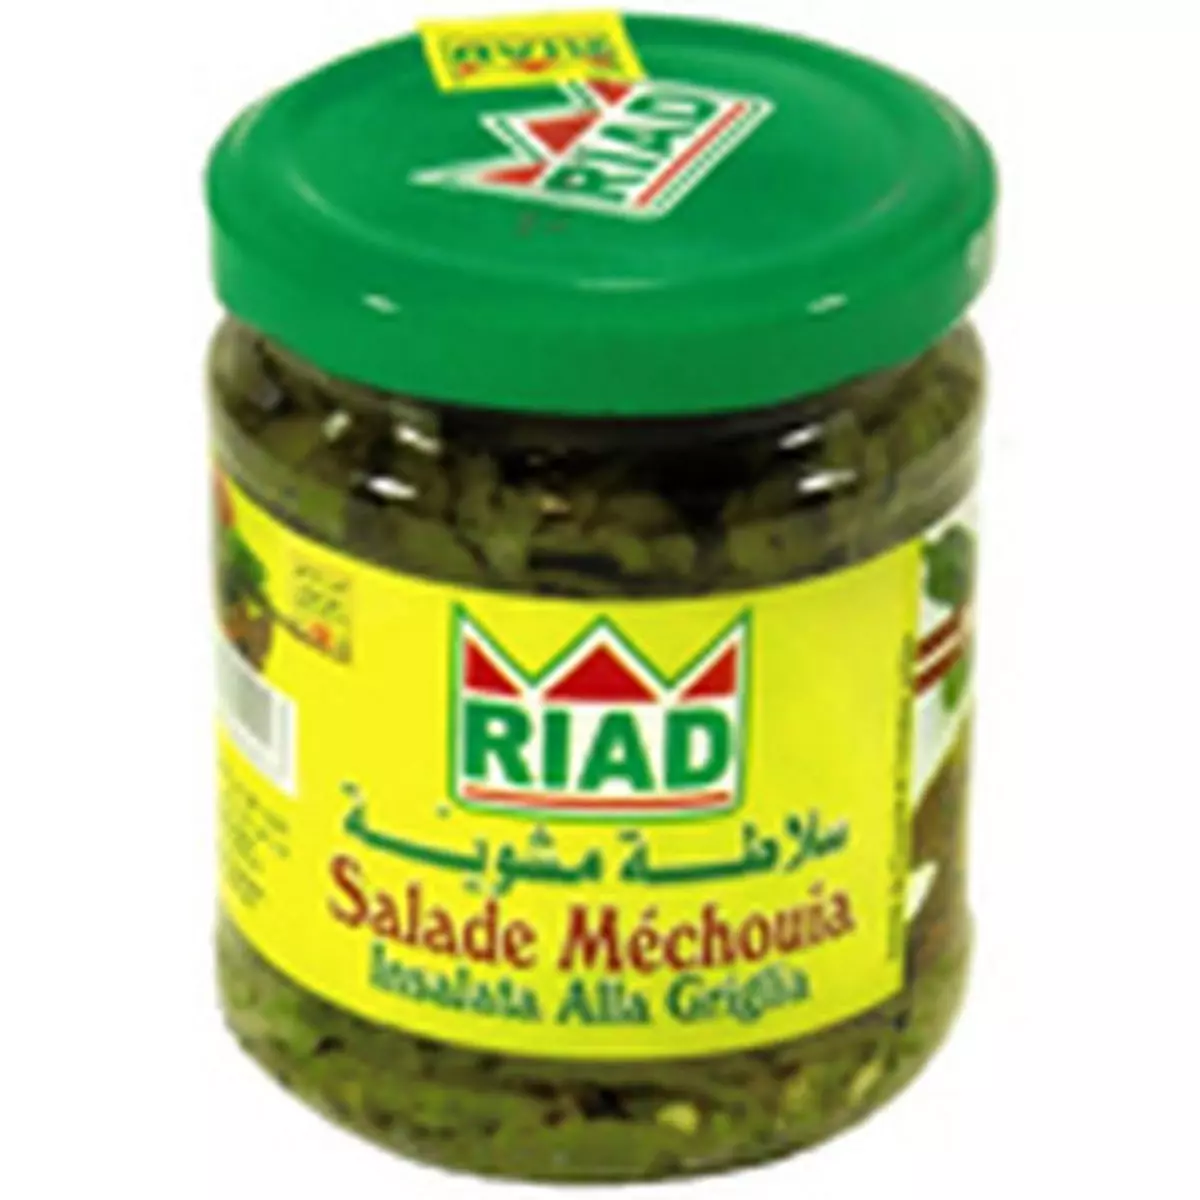 RIAD Salade Mechouia 190g